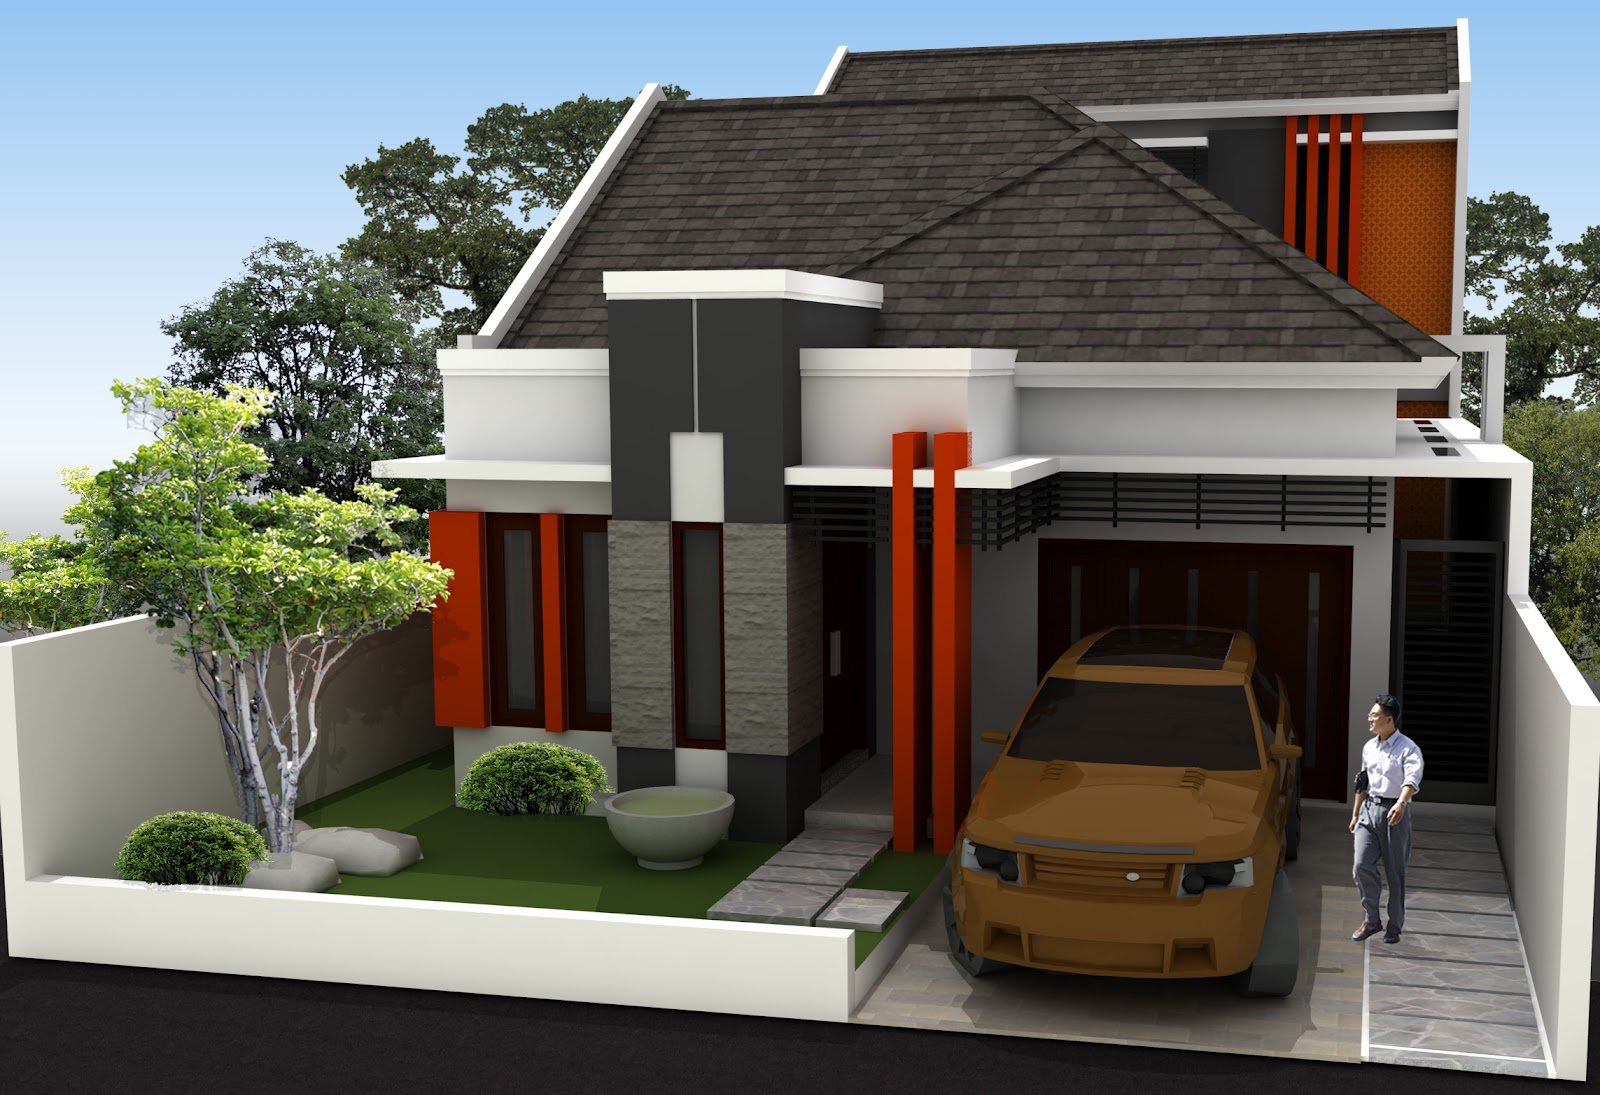 Contoh Model Rumah Minimalis Terbaru 7 Desain Rumah Minimalis